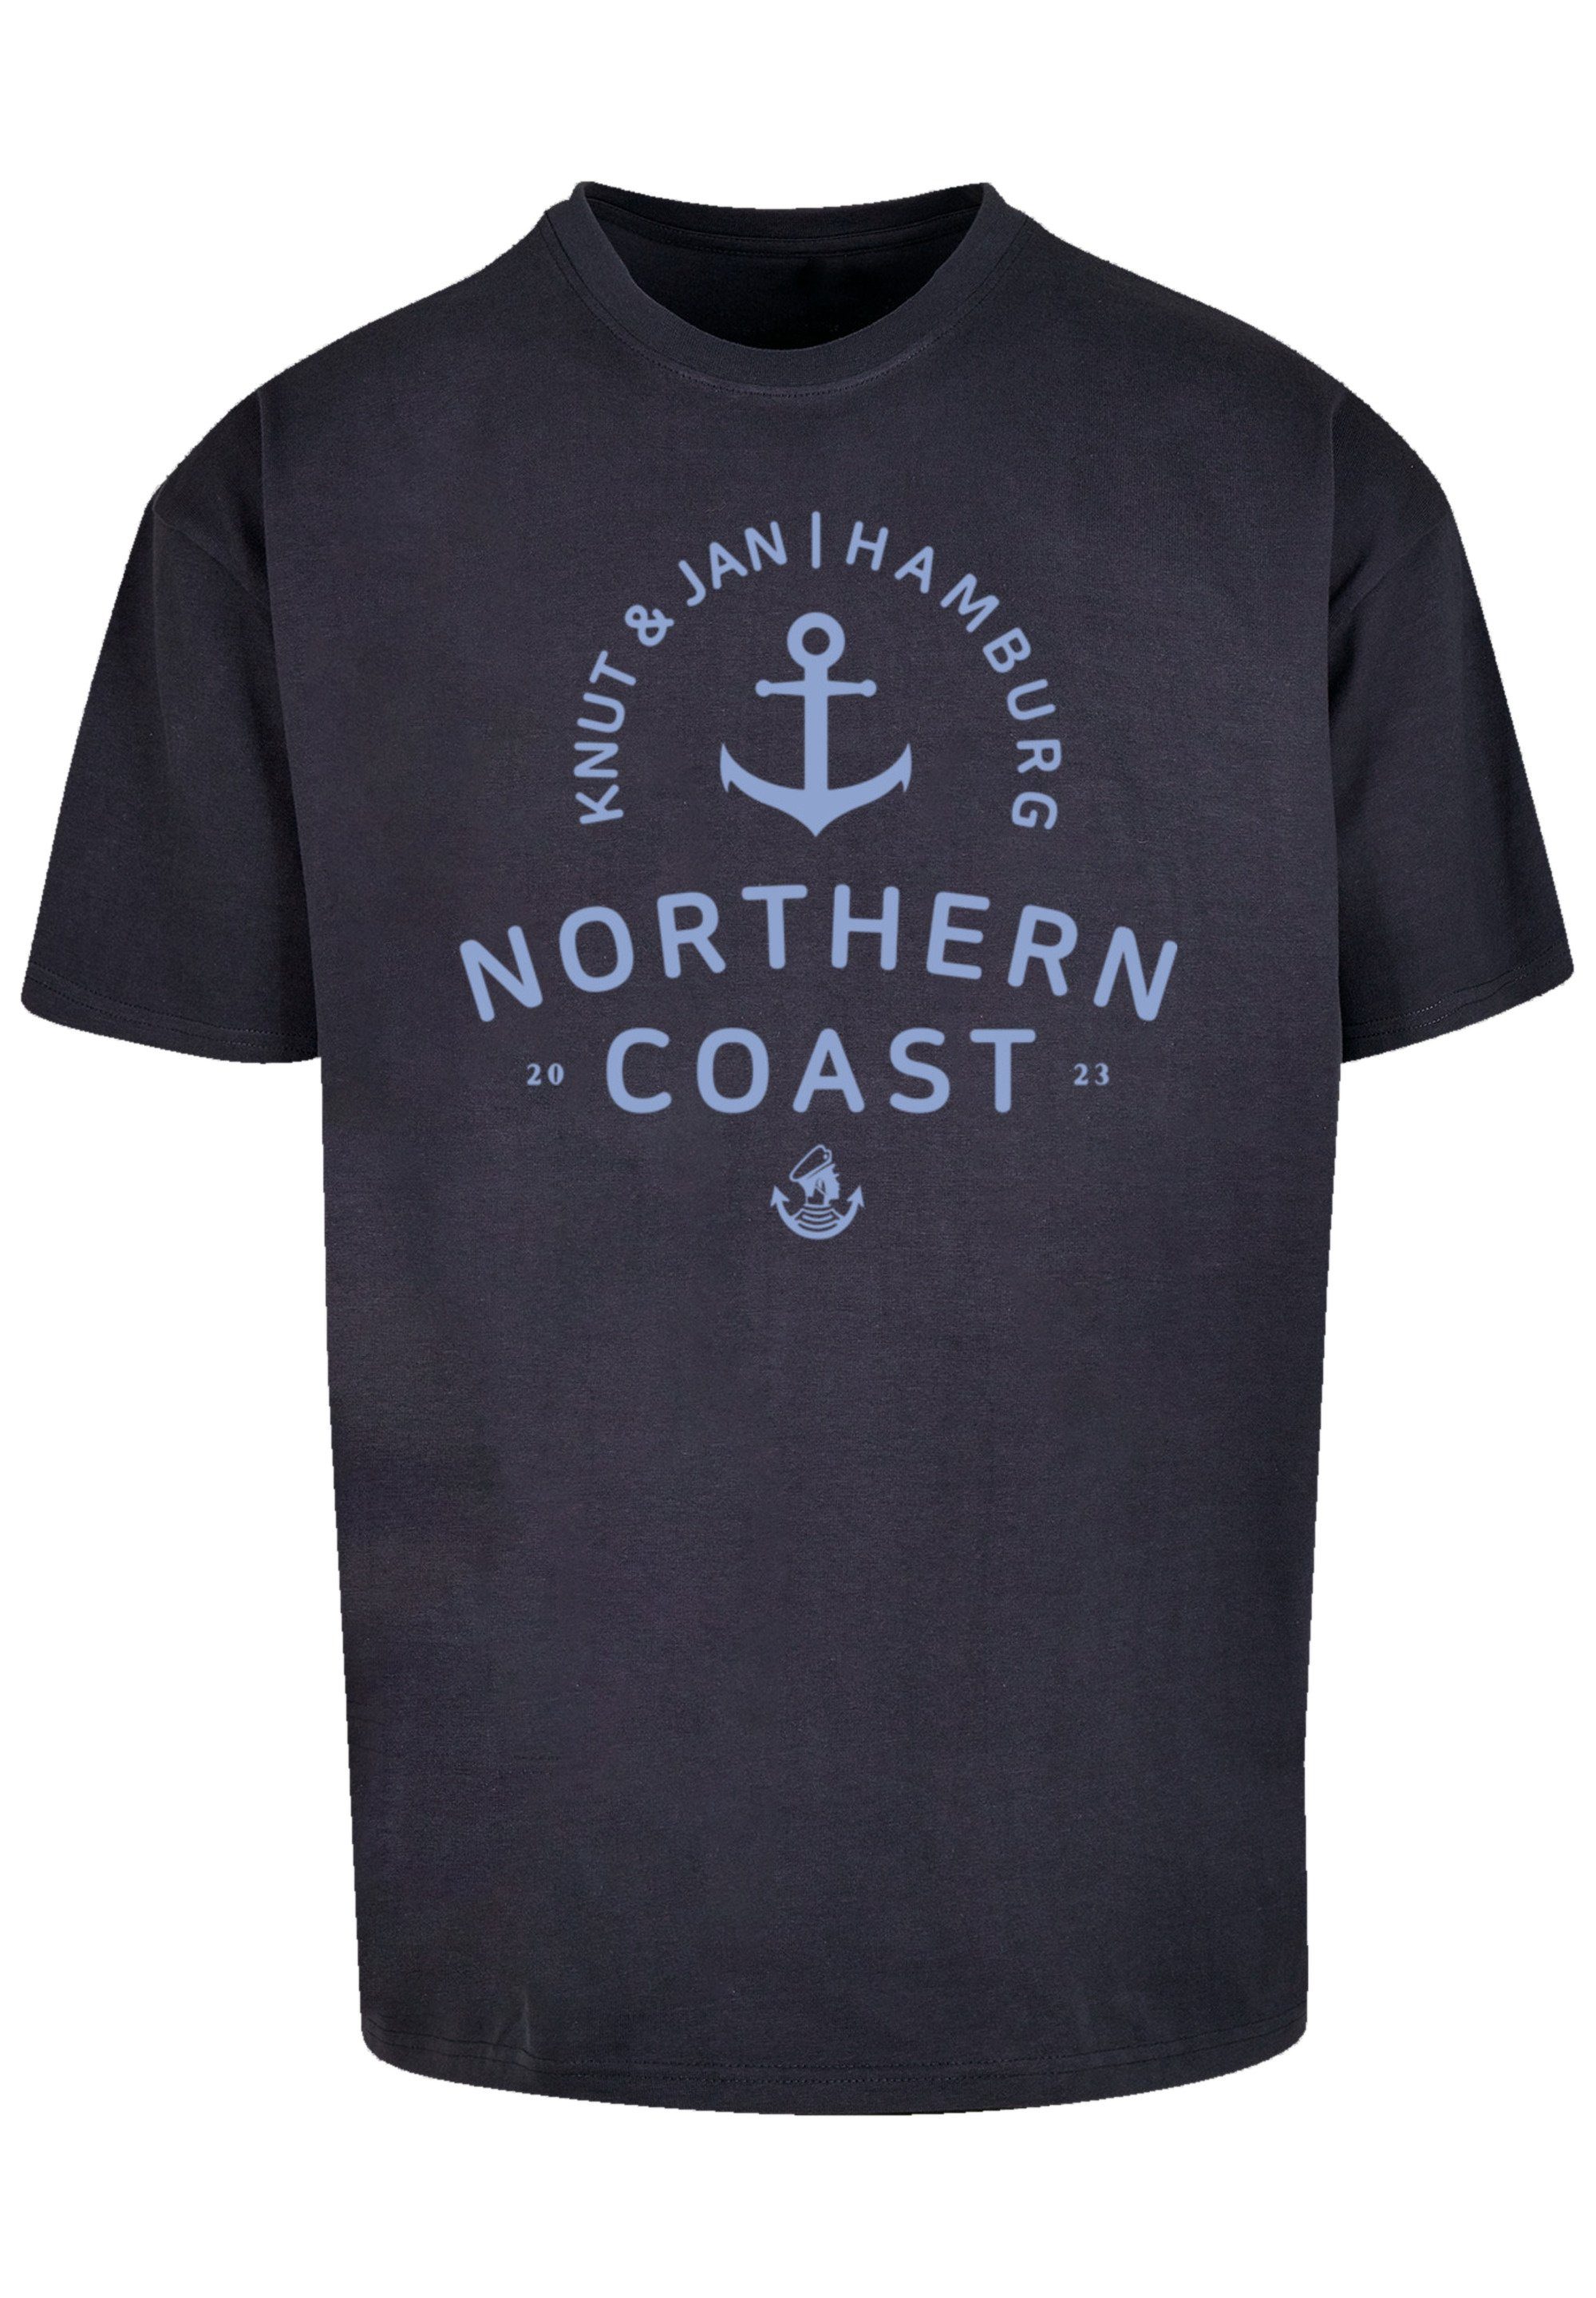 Fällt Print, bestellen kleiner aus, bitte weit eine & Hamburg Knut Nordsee Größe Jan F4NT4STIC T-Shirt